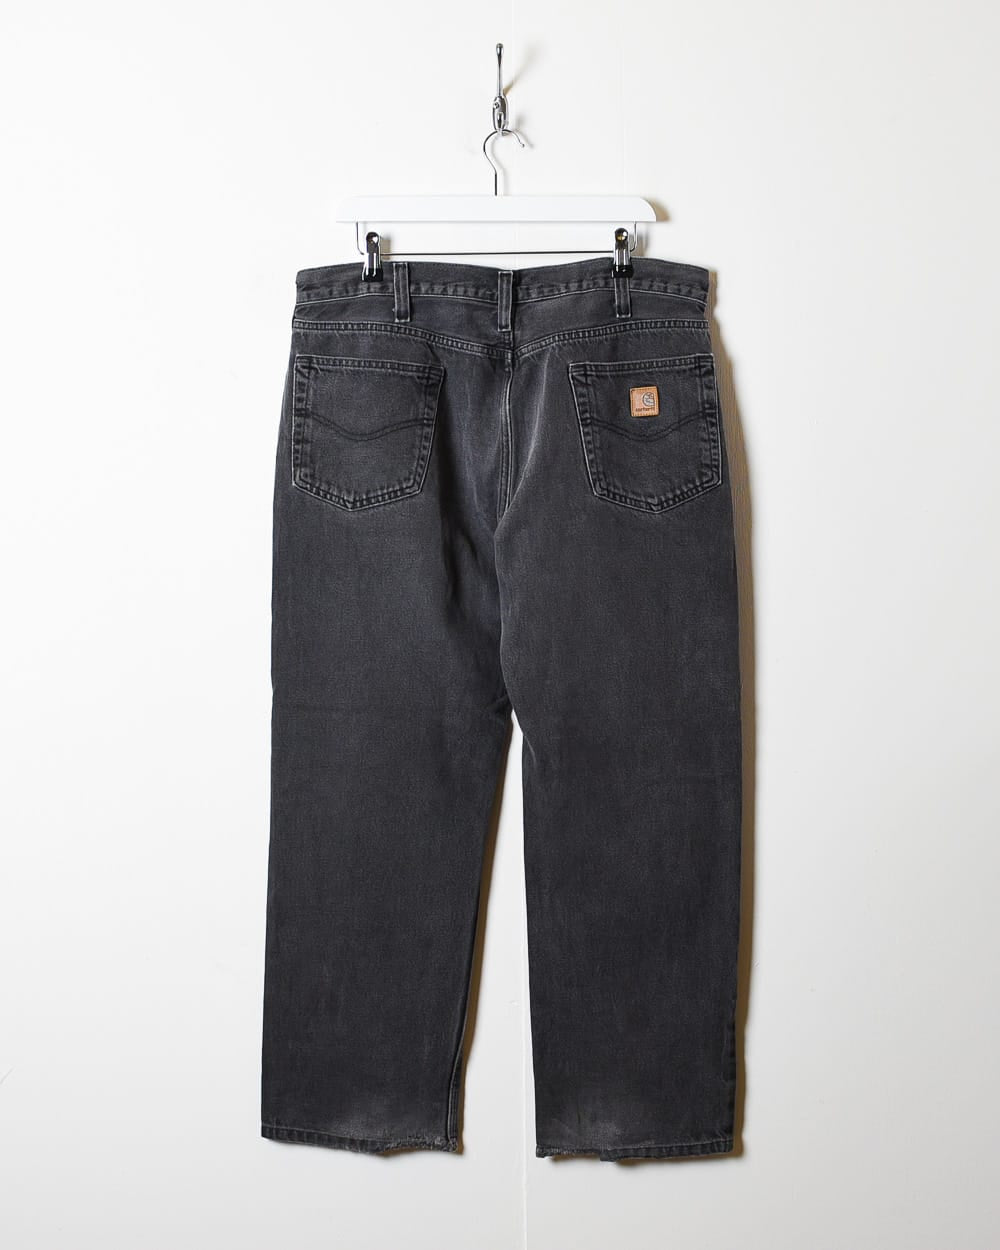 Black Carhartt Jeans - W36 L28